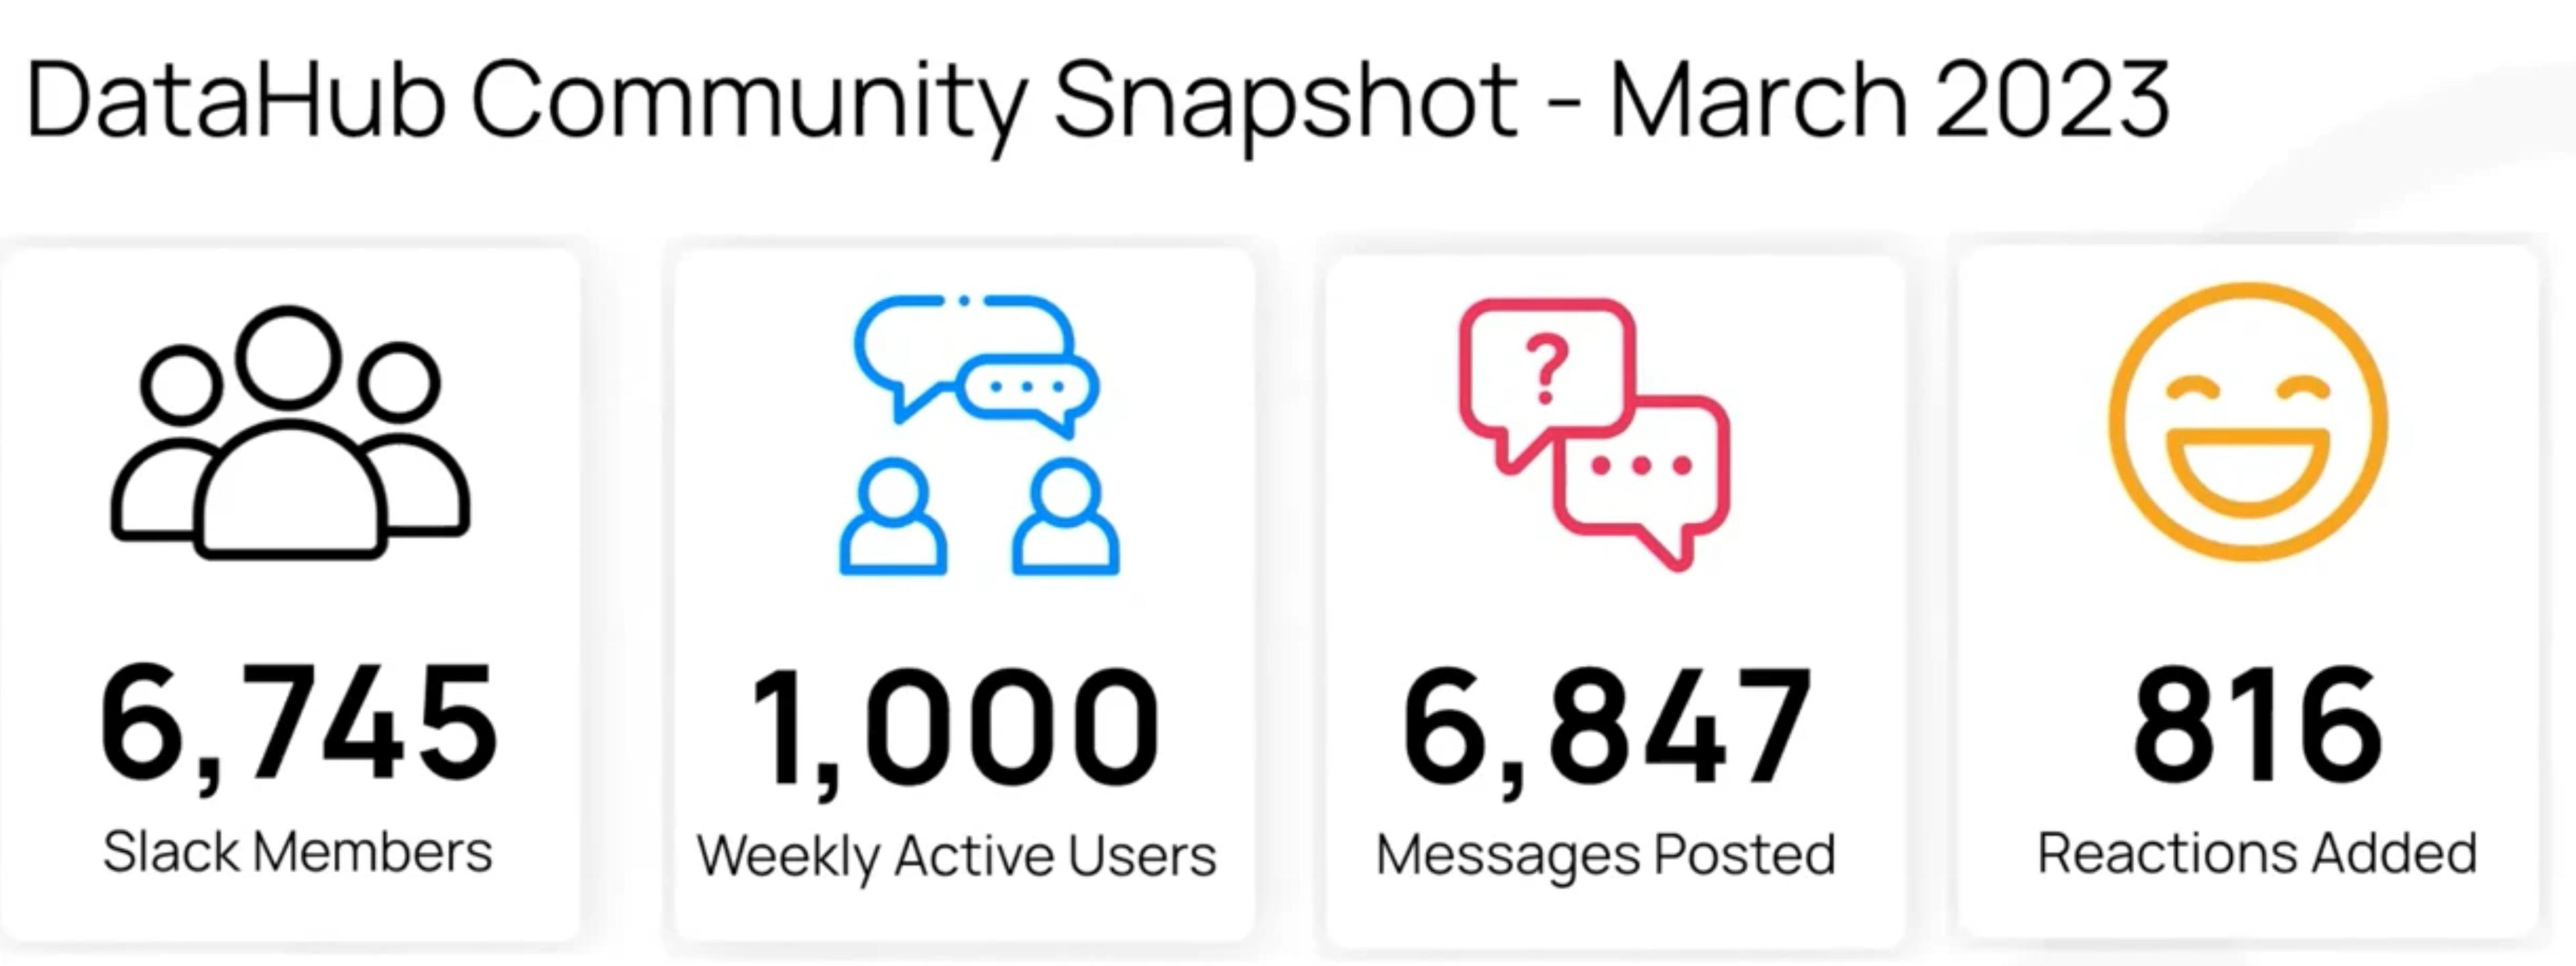 DataHub Community Snapshot - March 2023